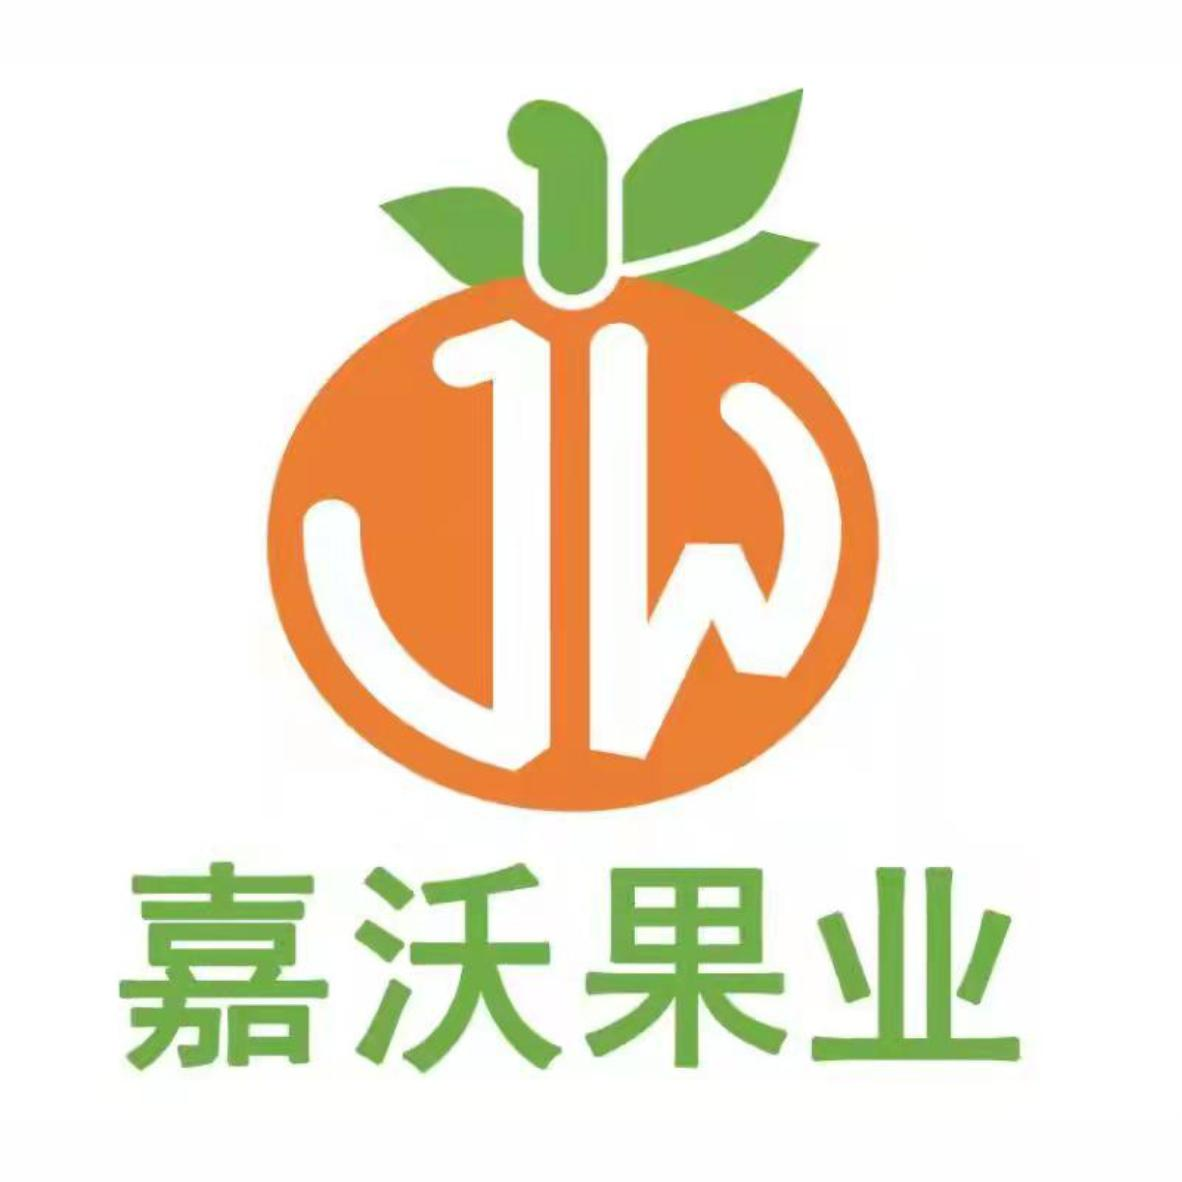 商标文字嘉沃果业商标注册号 60594760,商标申请人武胜县嘉沃水果种植